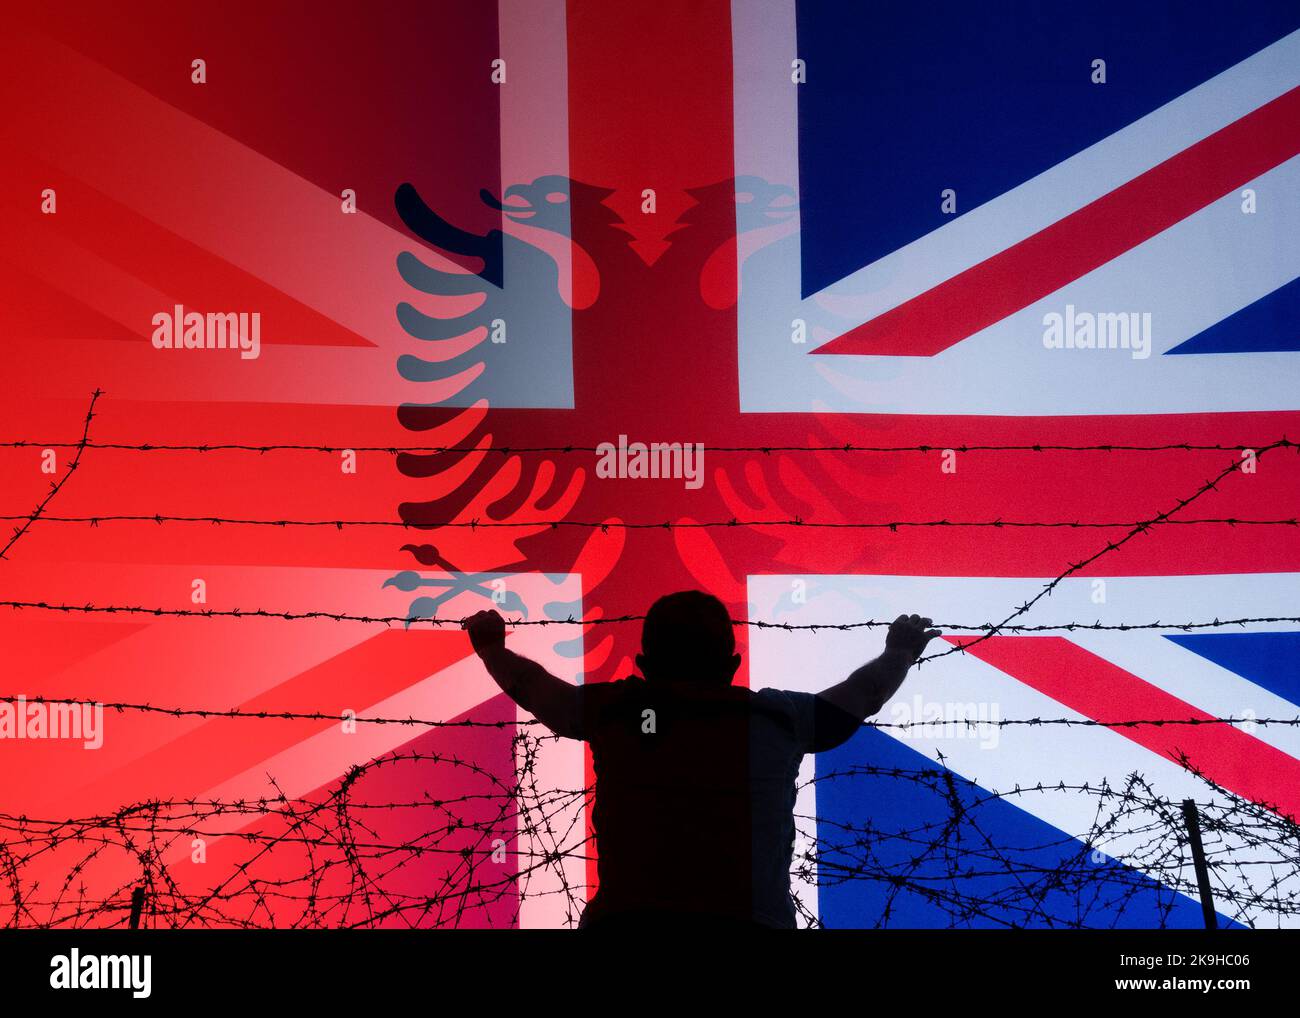 Bandiere dell'Albania e del Regno Unito, Regno Unito, con l'uomo che guarda sopra la recinzione di confine del filo spinato. Immagine del concetto: Immigrazione, attraversamento del canale, albanese... Foto Stock